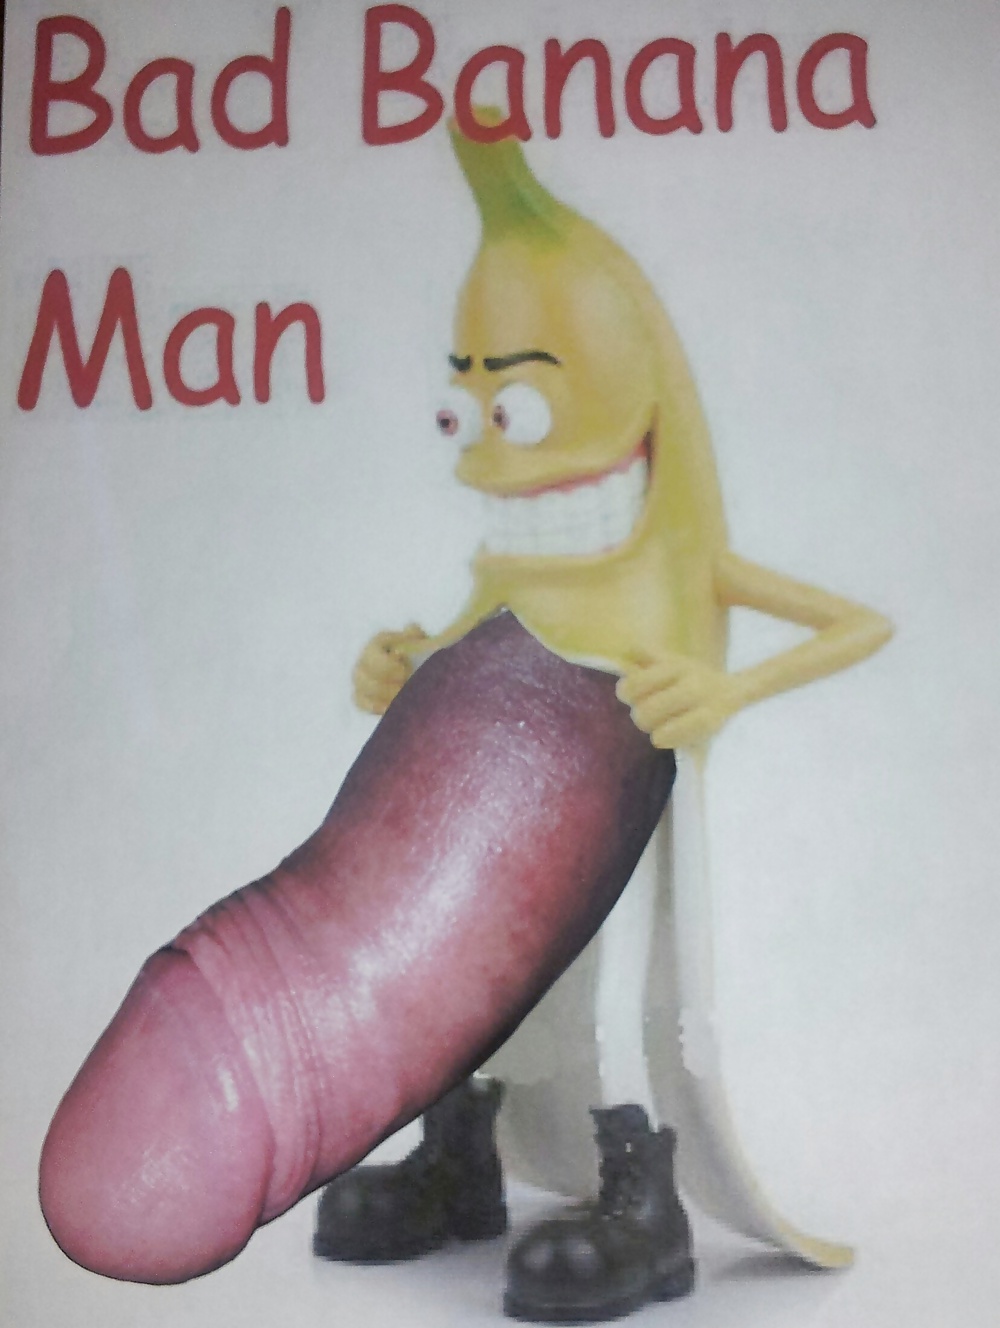 Banana Man Porn - BAD BANANA MAN - 1 Pics | xHamster